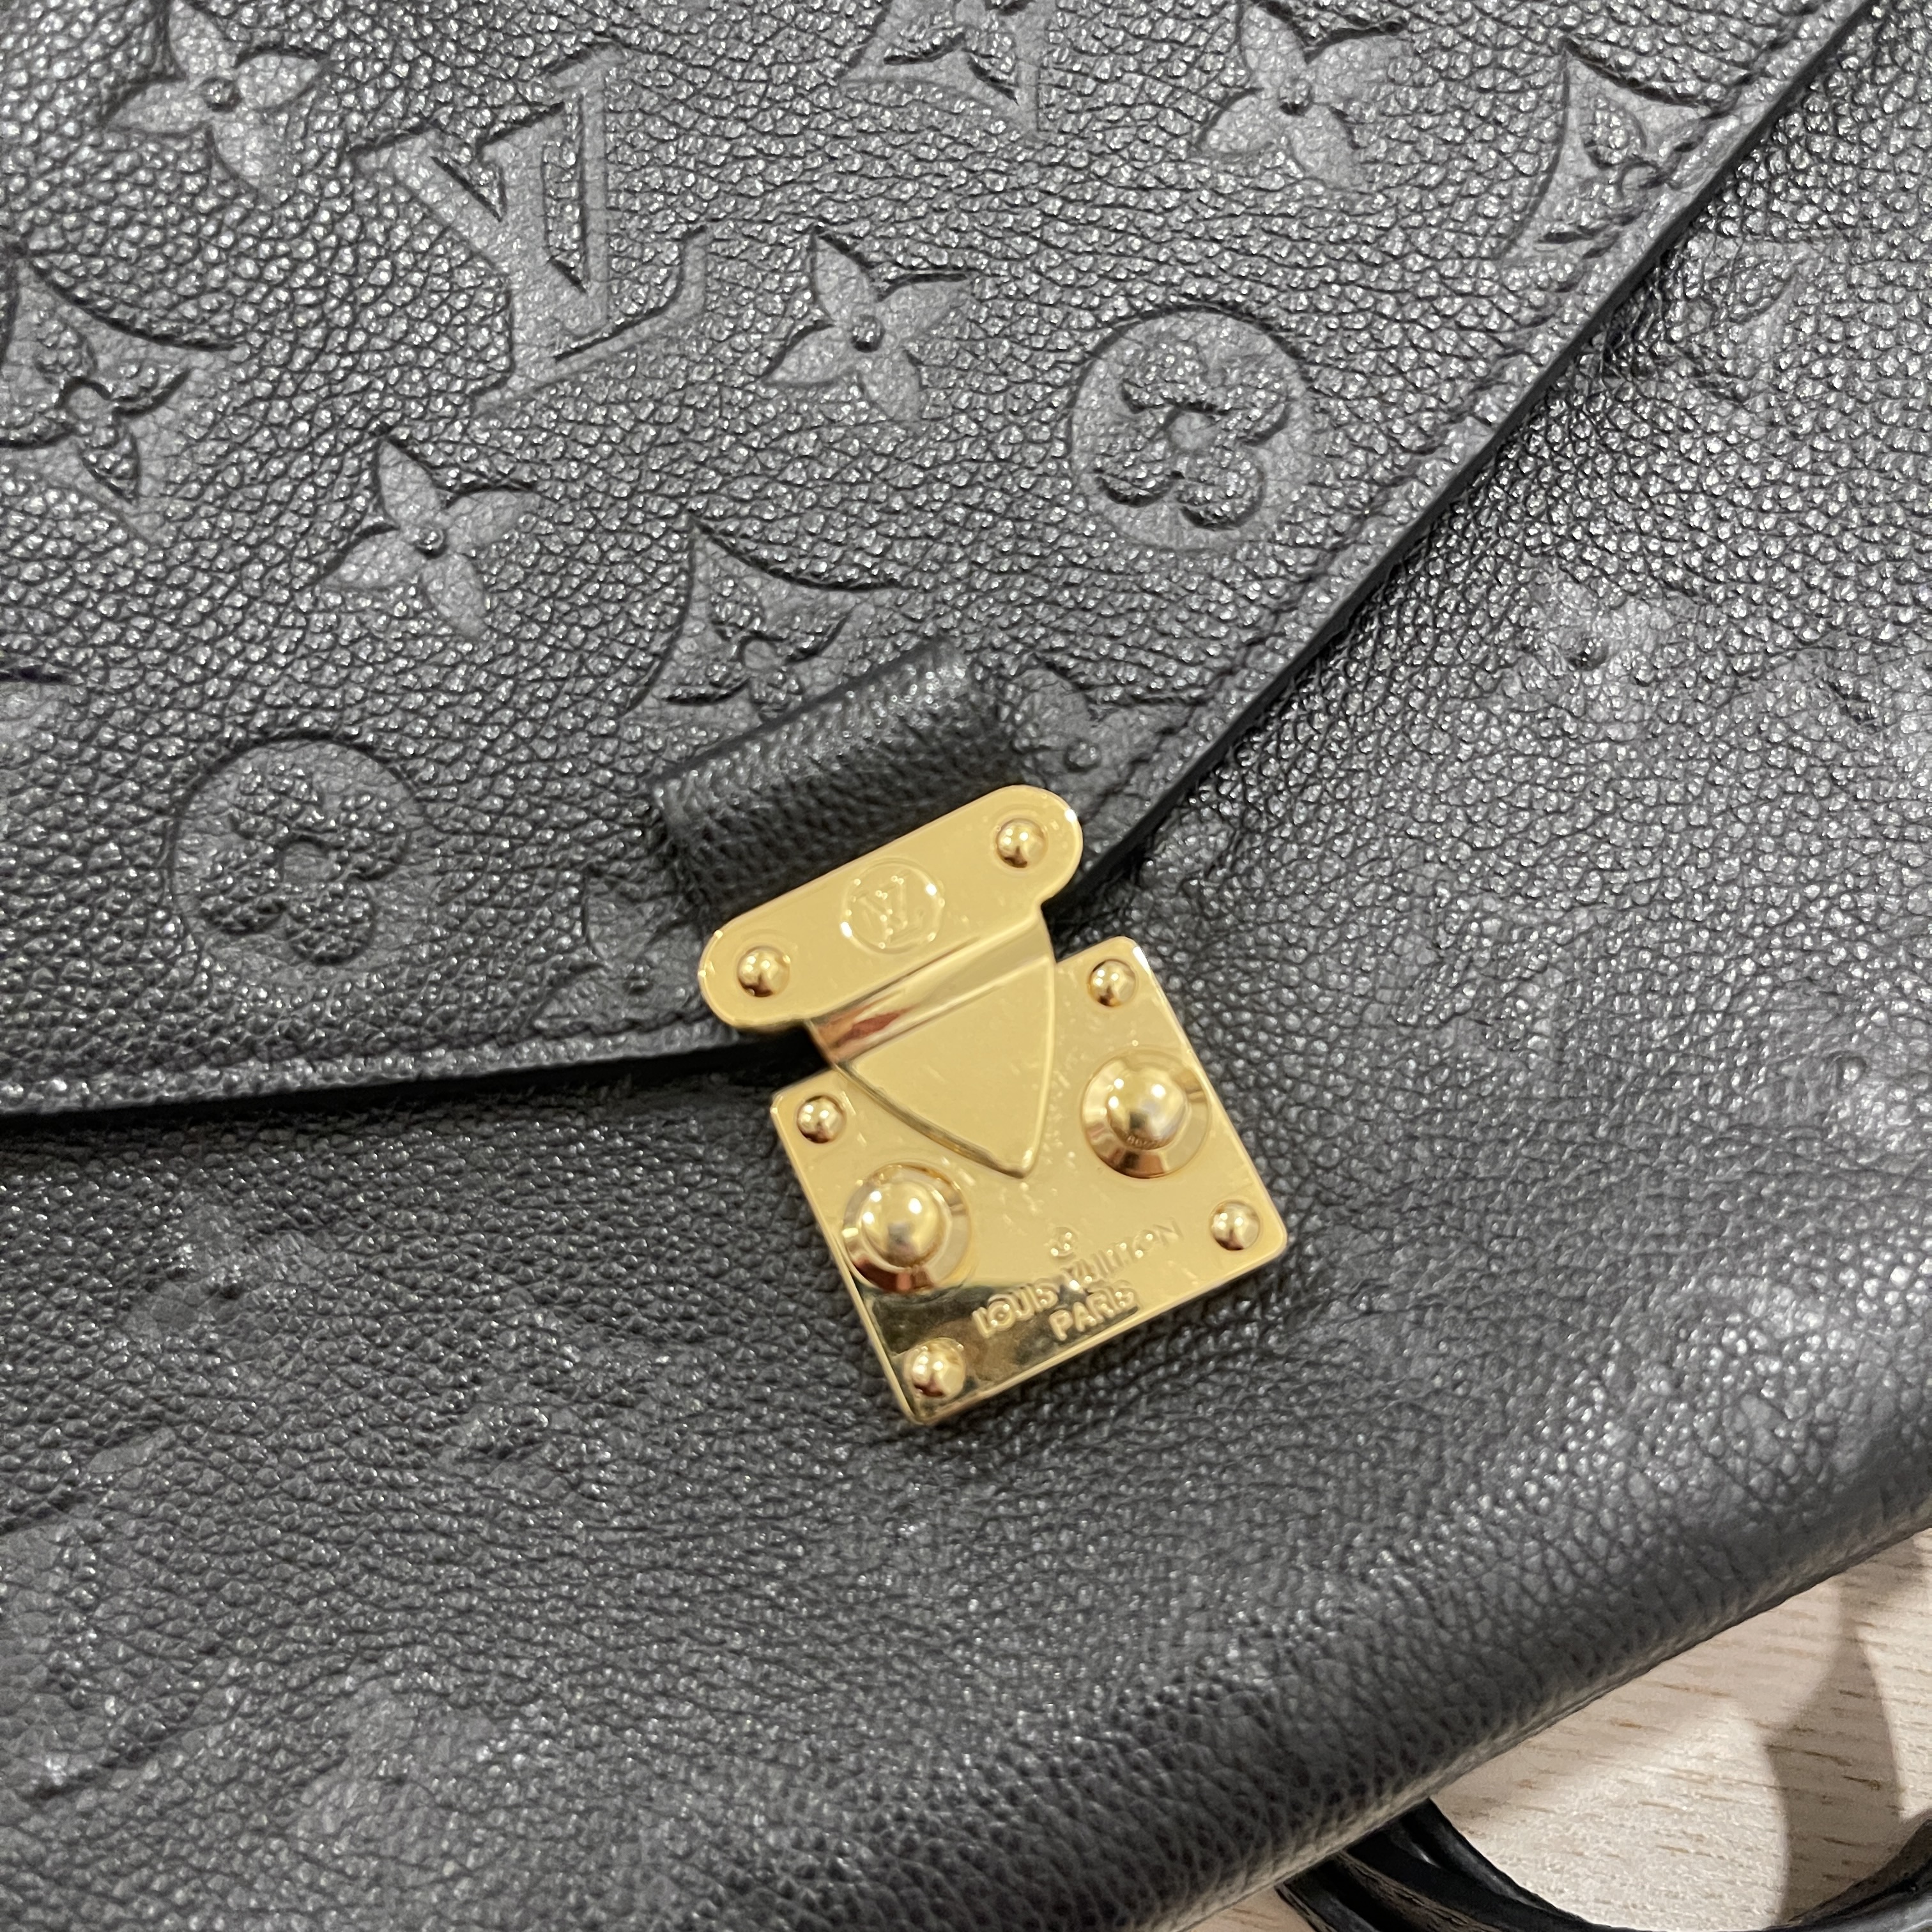 Louis Vuitton Félicie Pochette Noir Monogram Empriente Leather - The Lux  Portal